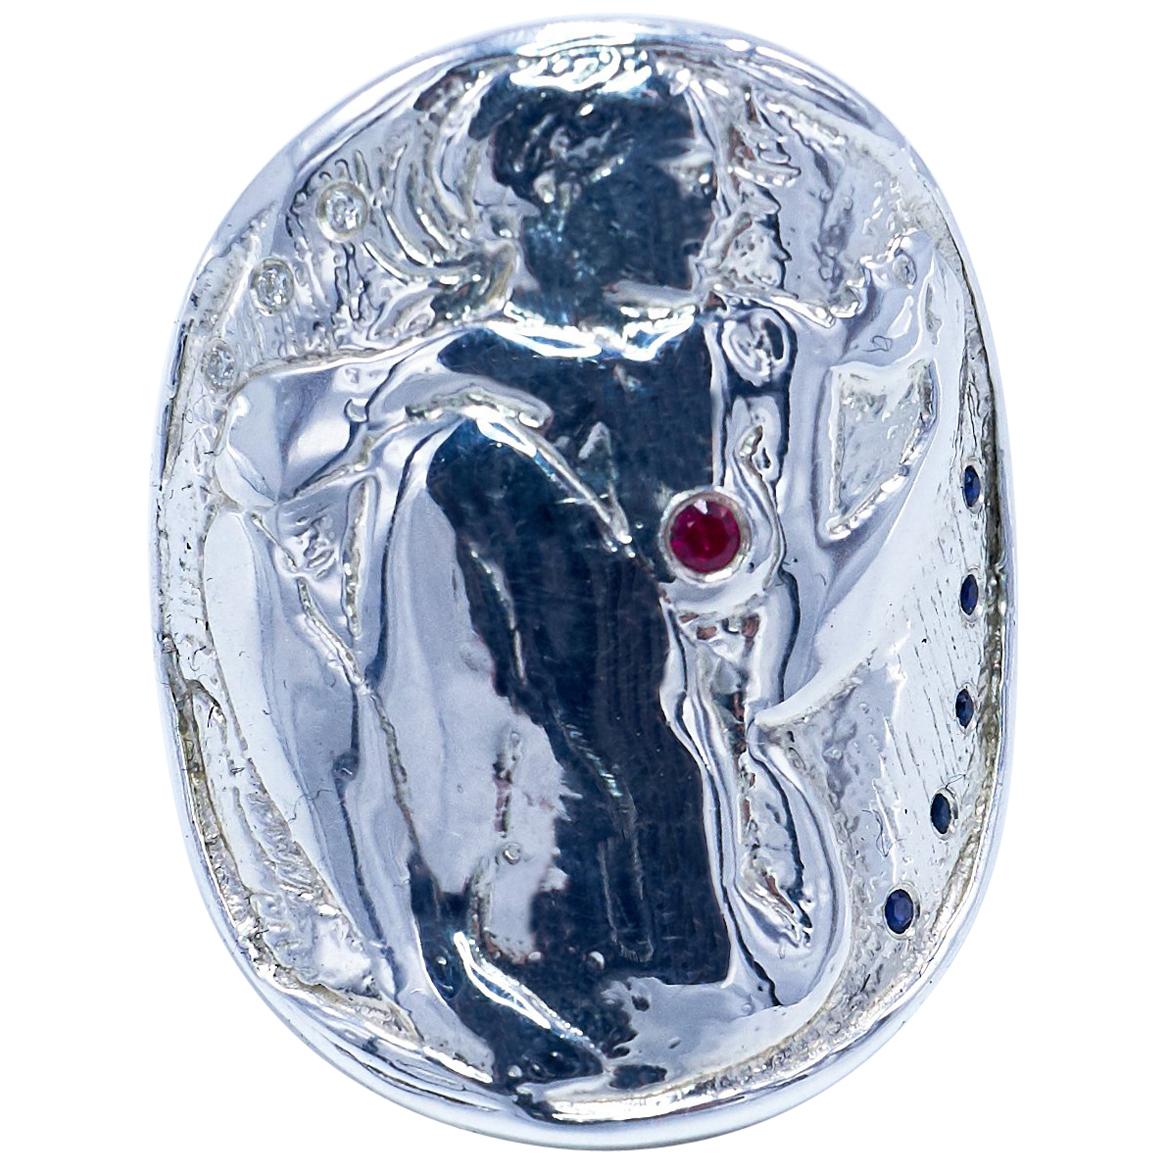 Bague de Cocktail Médaille Pièce Argent Femme Blanc Diamant Rubis Saphir BleuJ Dauphin

Bague 